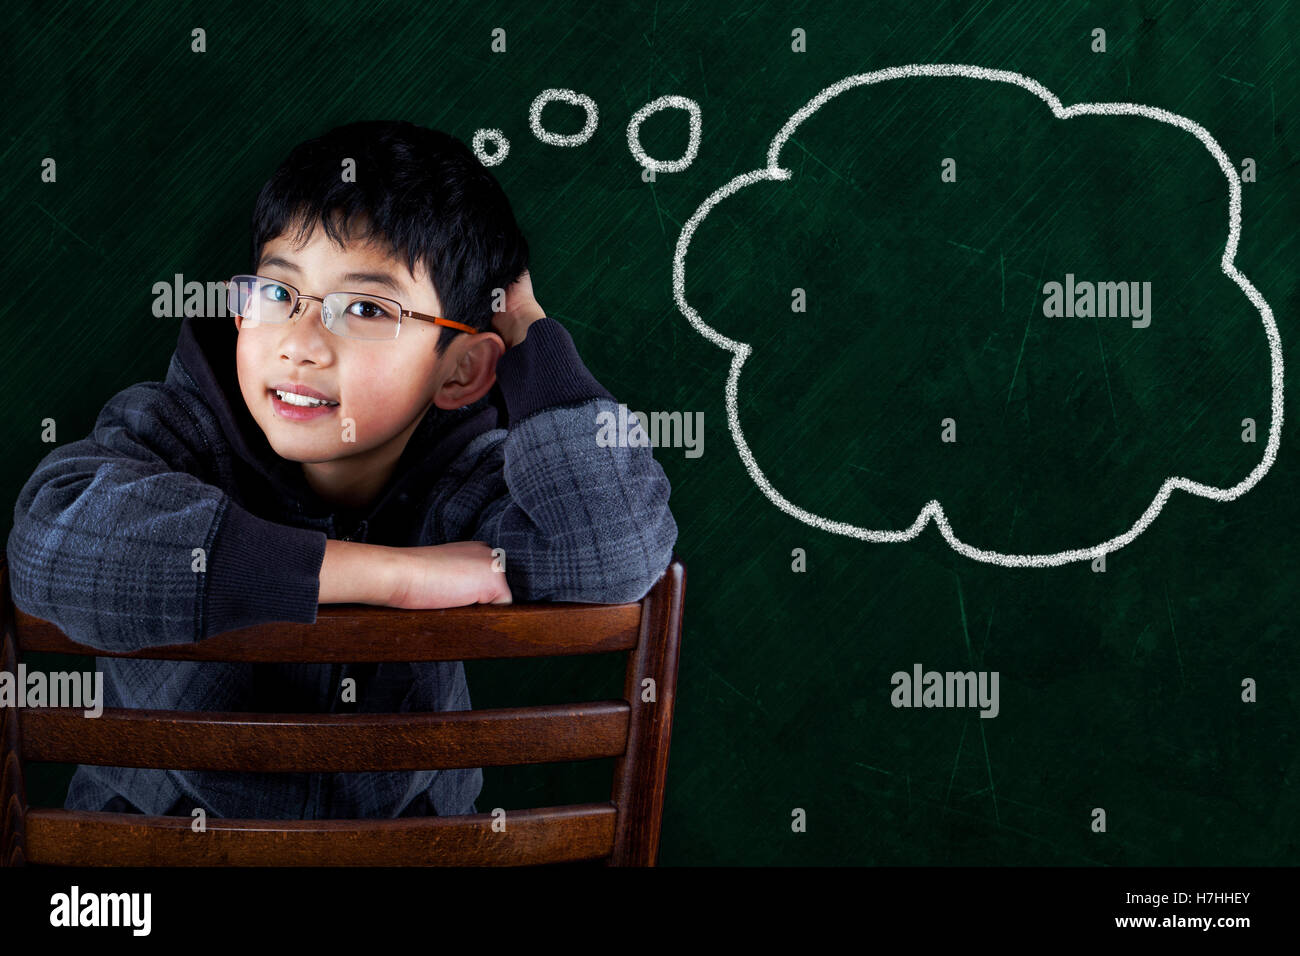 Intelligente Asian Boy auf Klassenzimmer Stuhl sitzend mit Tafel Hintergrund und Blase textfreiraum gedacht. Stockfoto